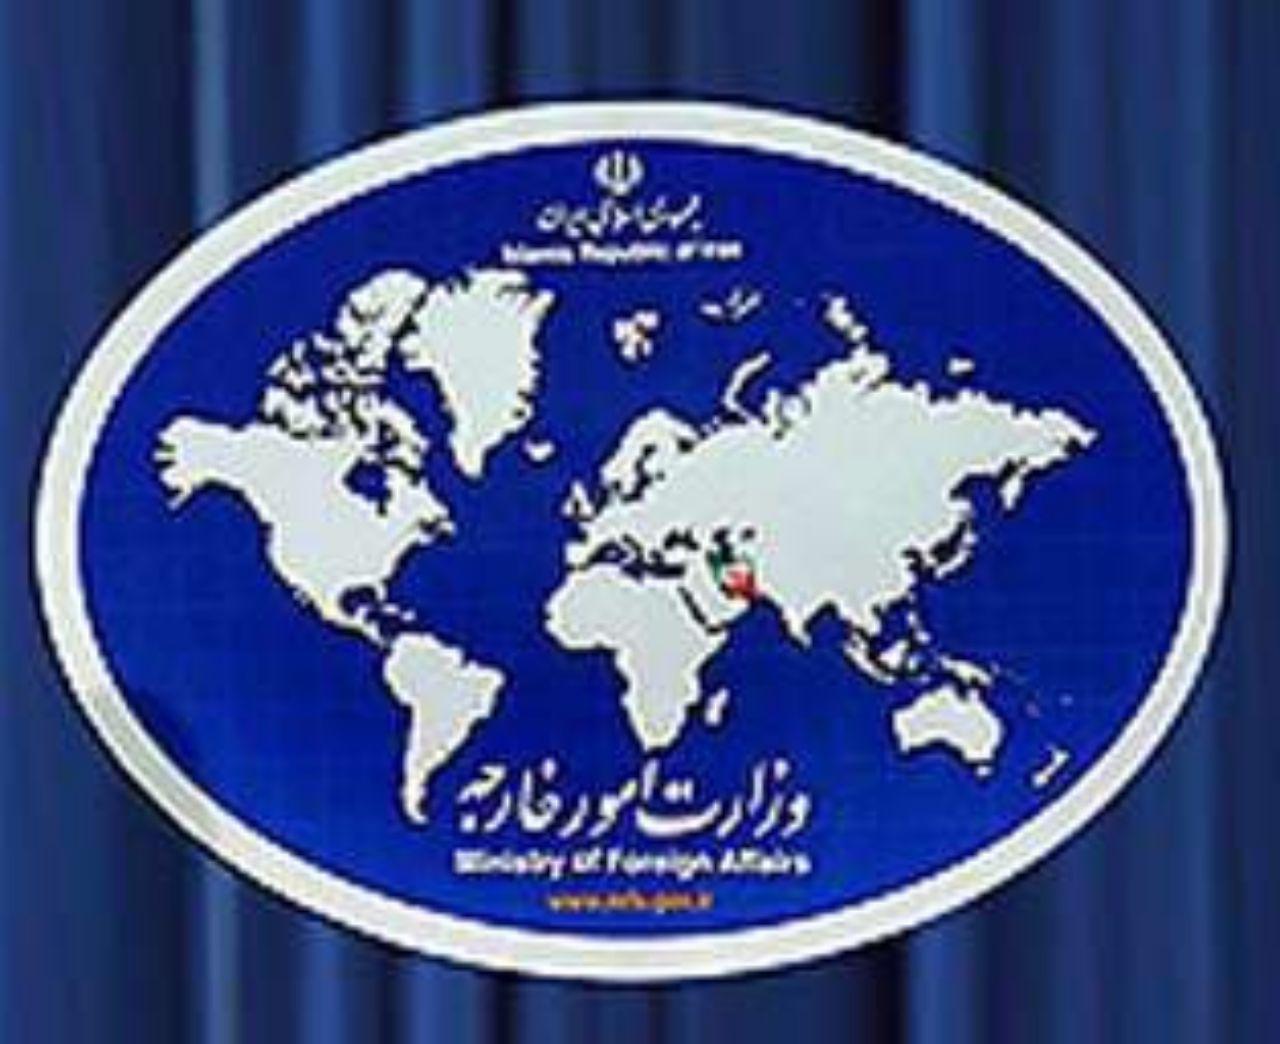 بیانیه وزارت امور خارجه جمهوری اسلامی ایران به مناسبت فرا رسیدن روز جهانی قدس